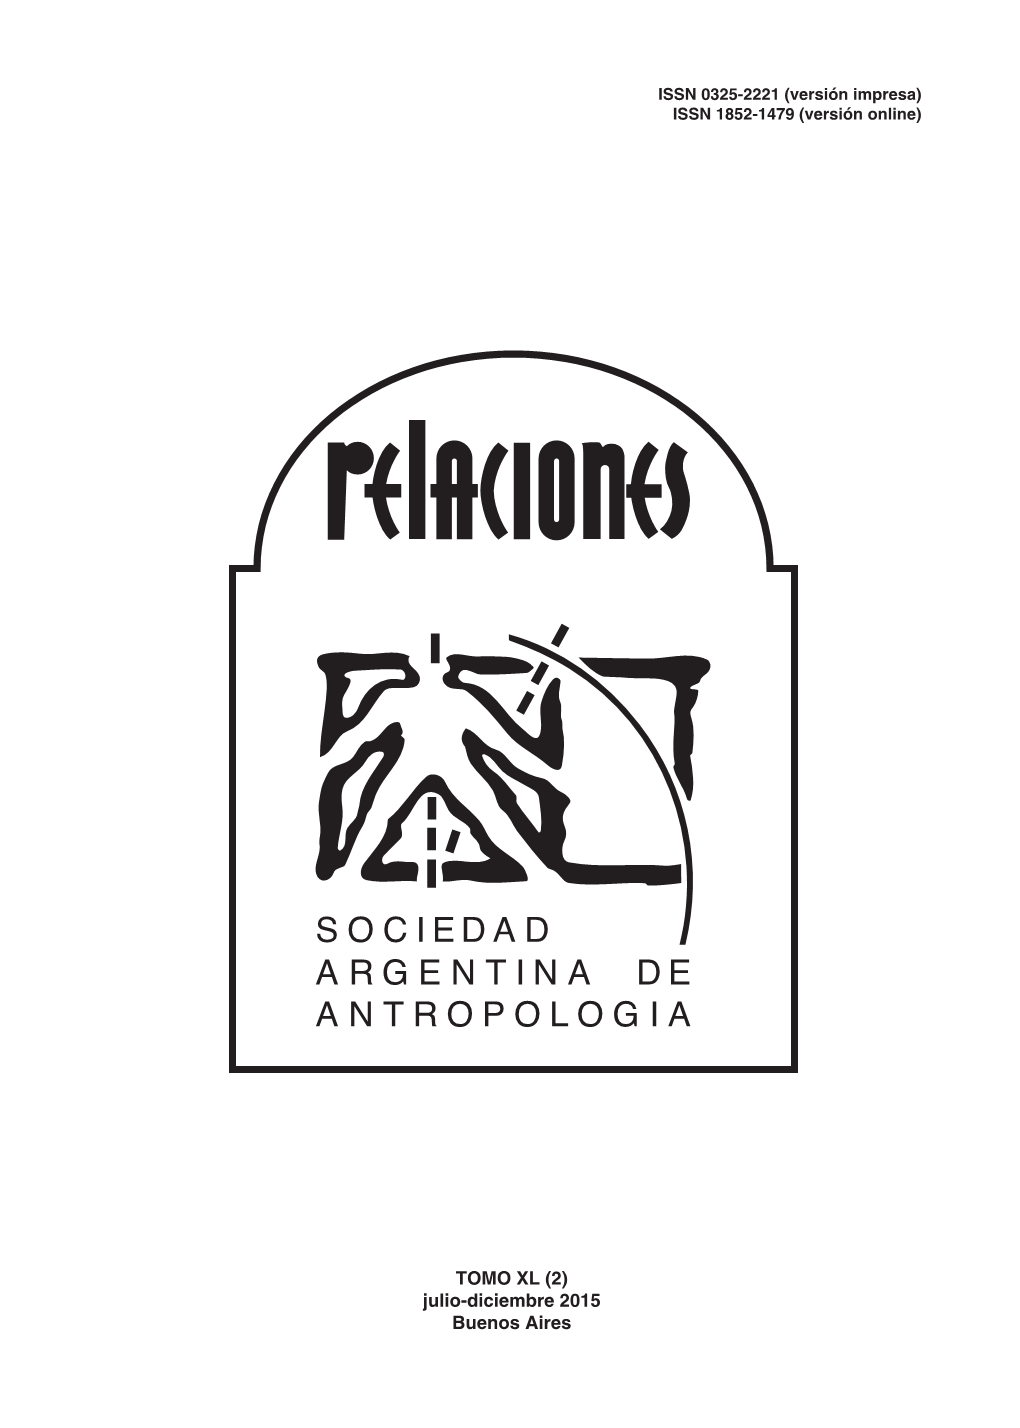 Julio-Diciembre 2015 Buenos Aires COMISIÓN DIRECTIVA SOCIEDAD ARGENTINA DE ANTROPOLOGÍA 2014-2015